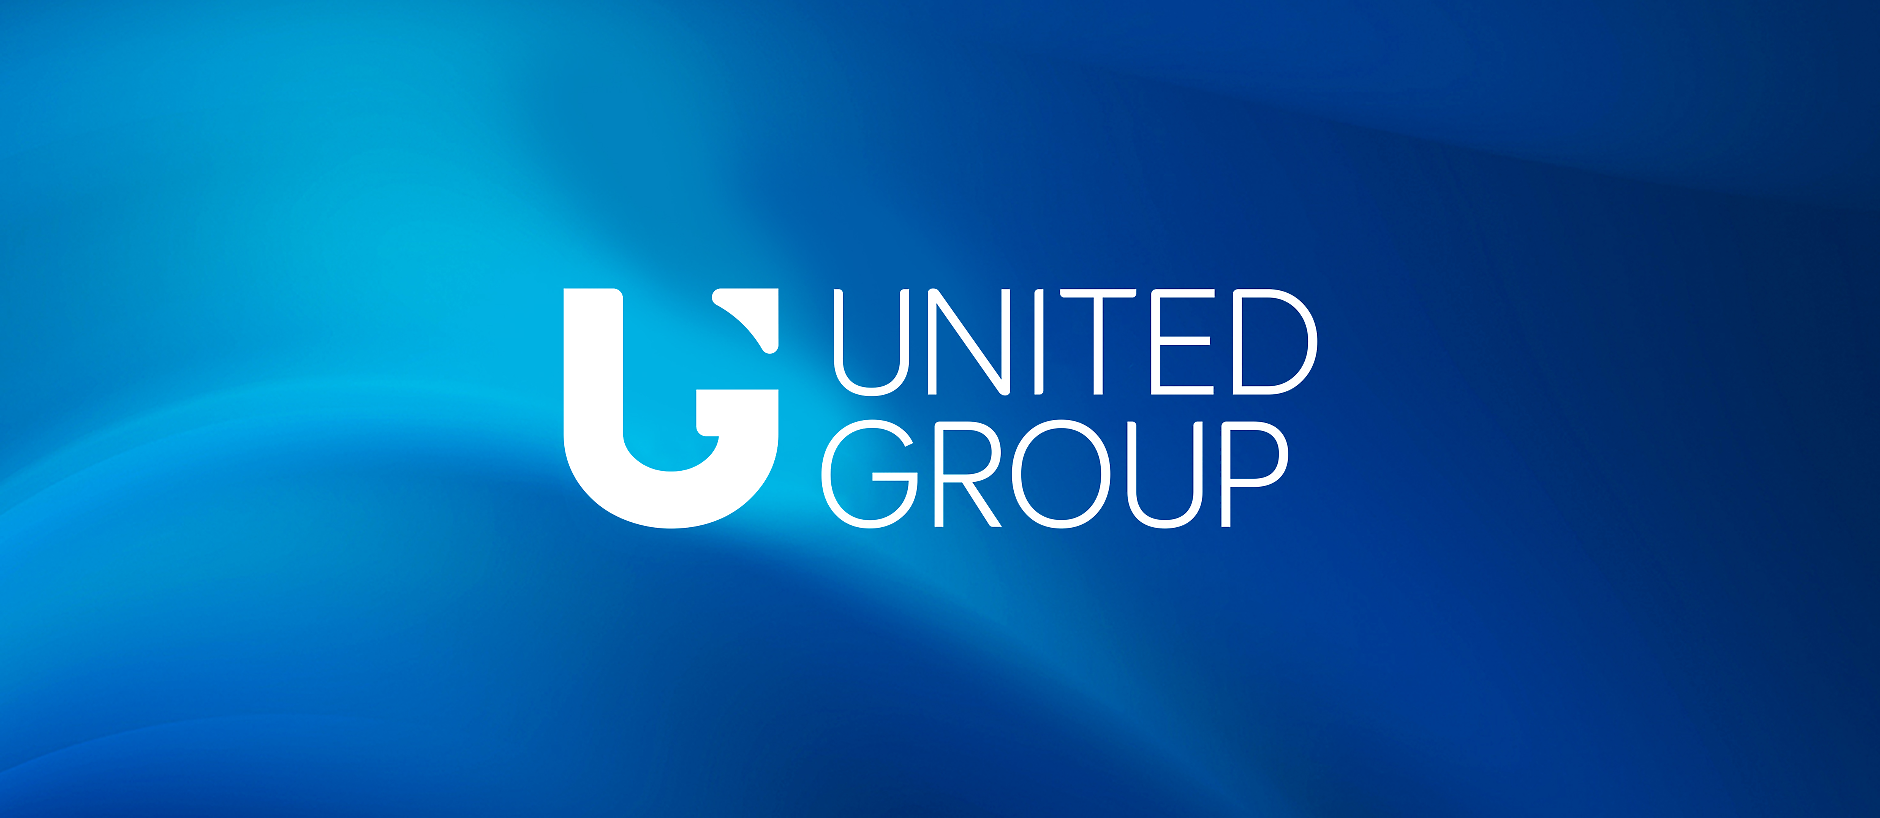 United Group инвестира още 1,2 млрд. лв. в България и продължава регионалната експанзия